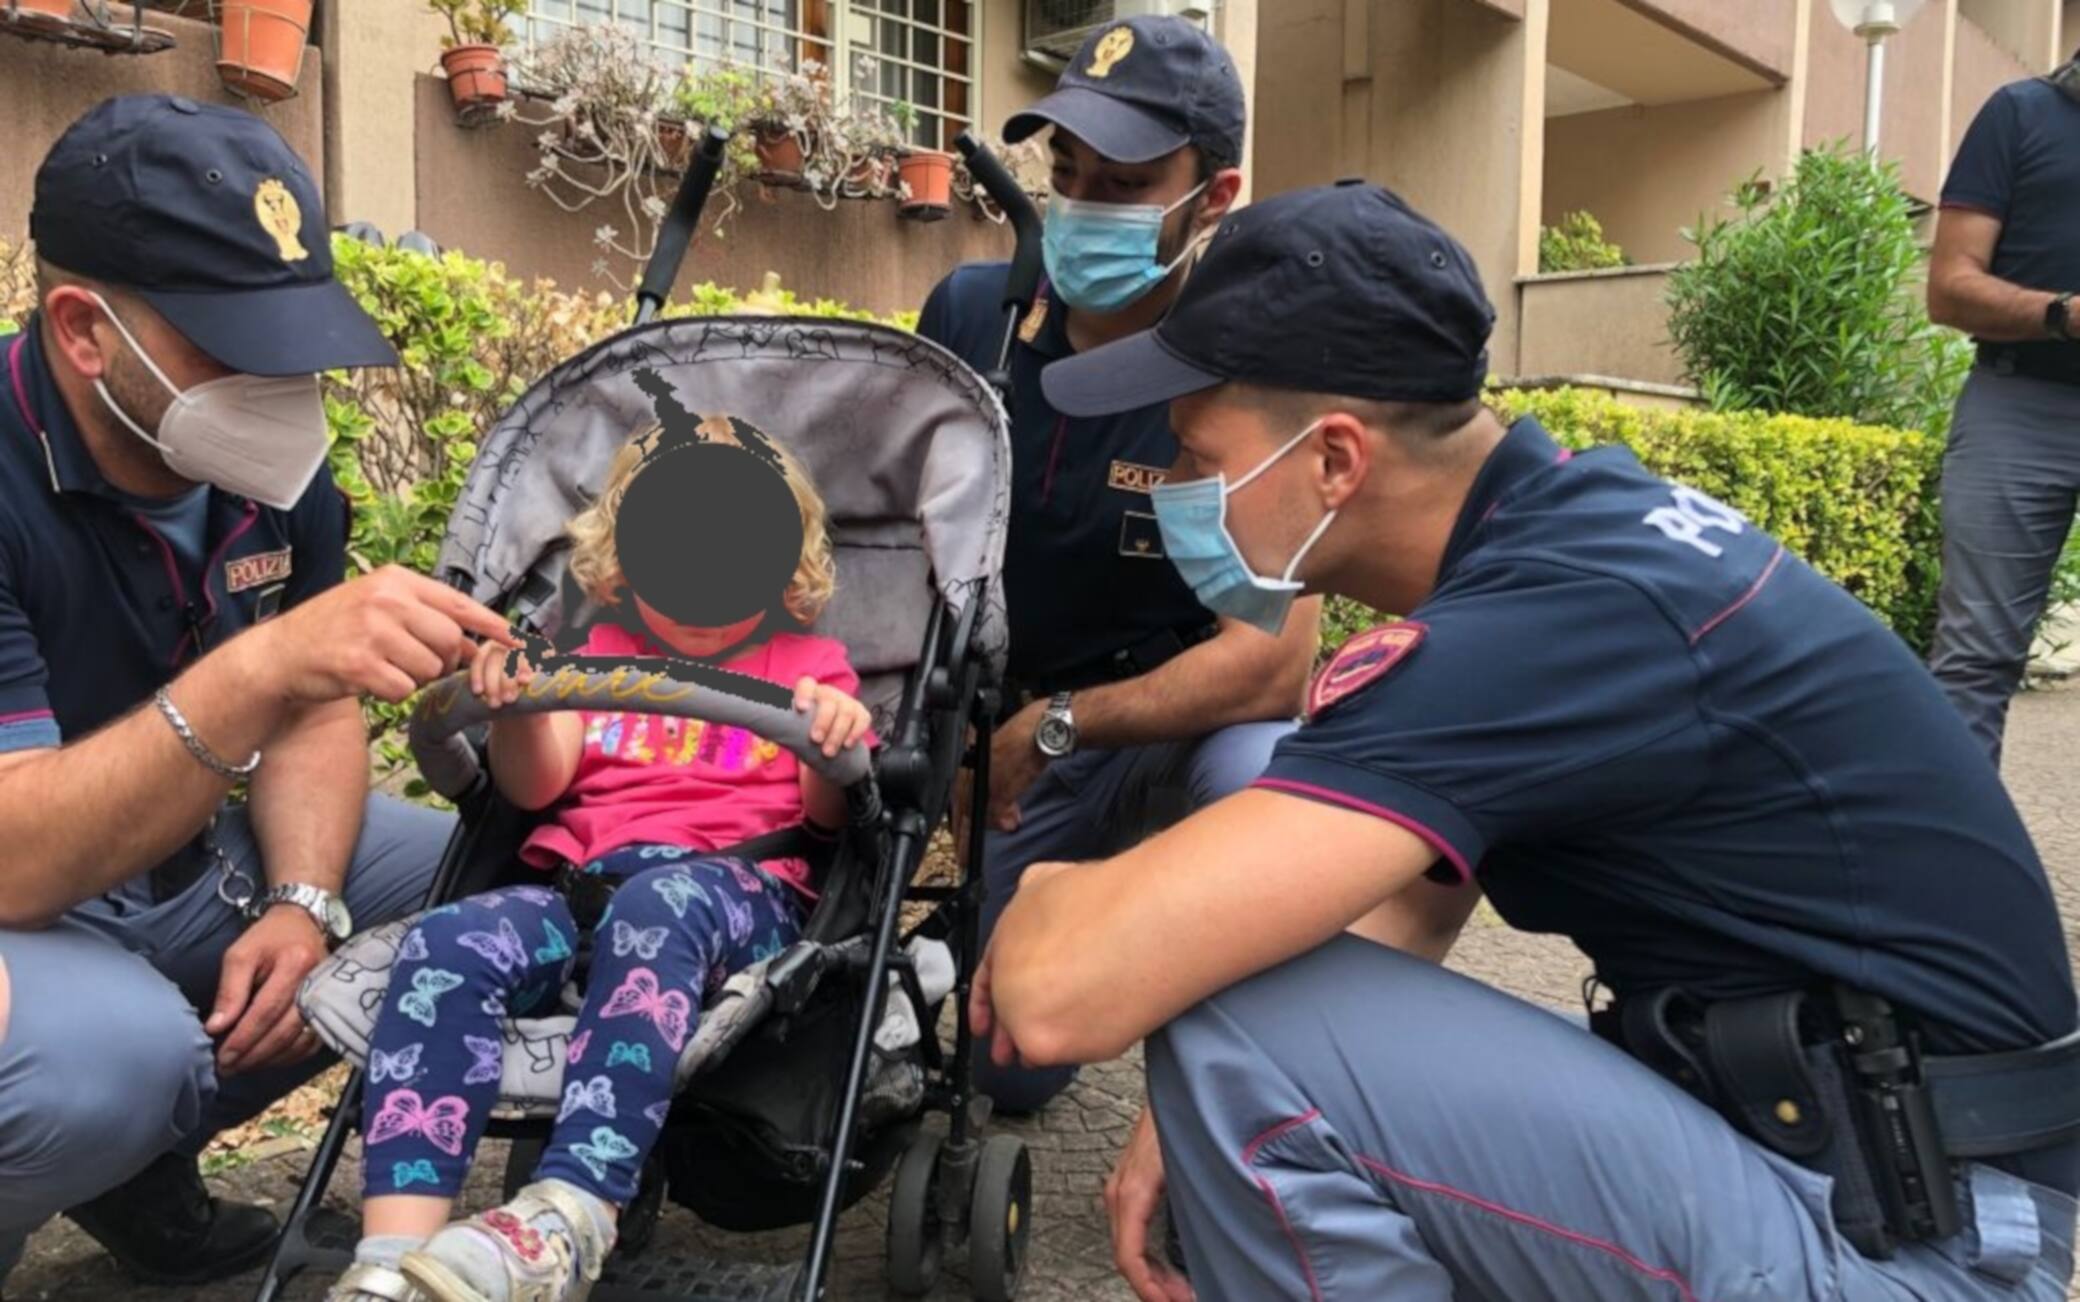 A Roma bambina salvata dai poliziotti, rischiava di cadere dal balcone